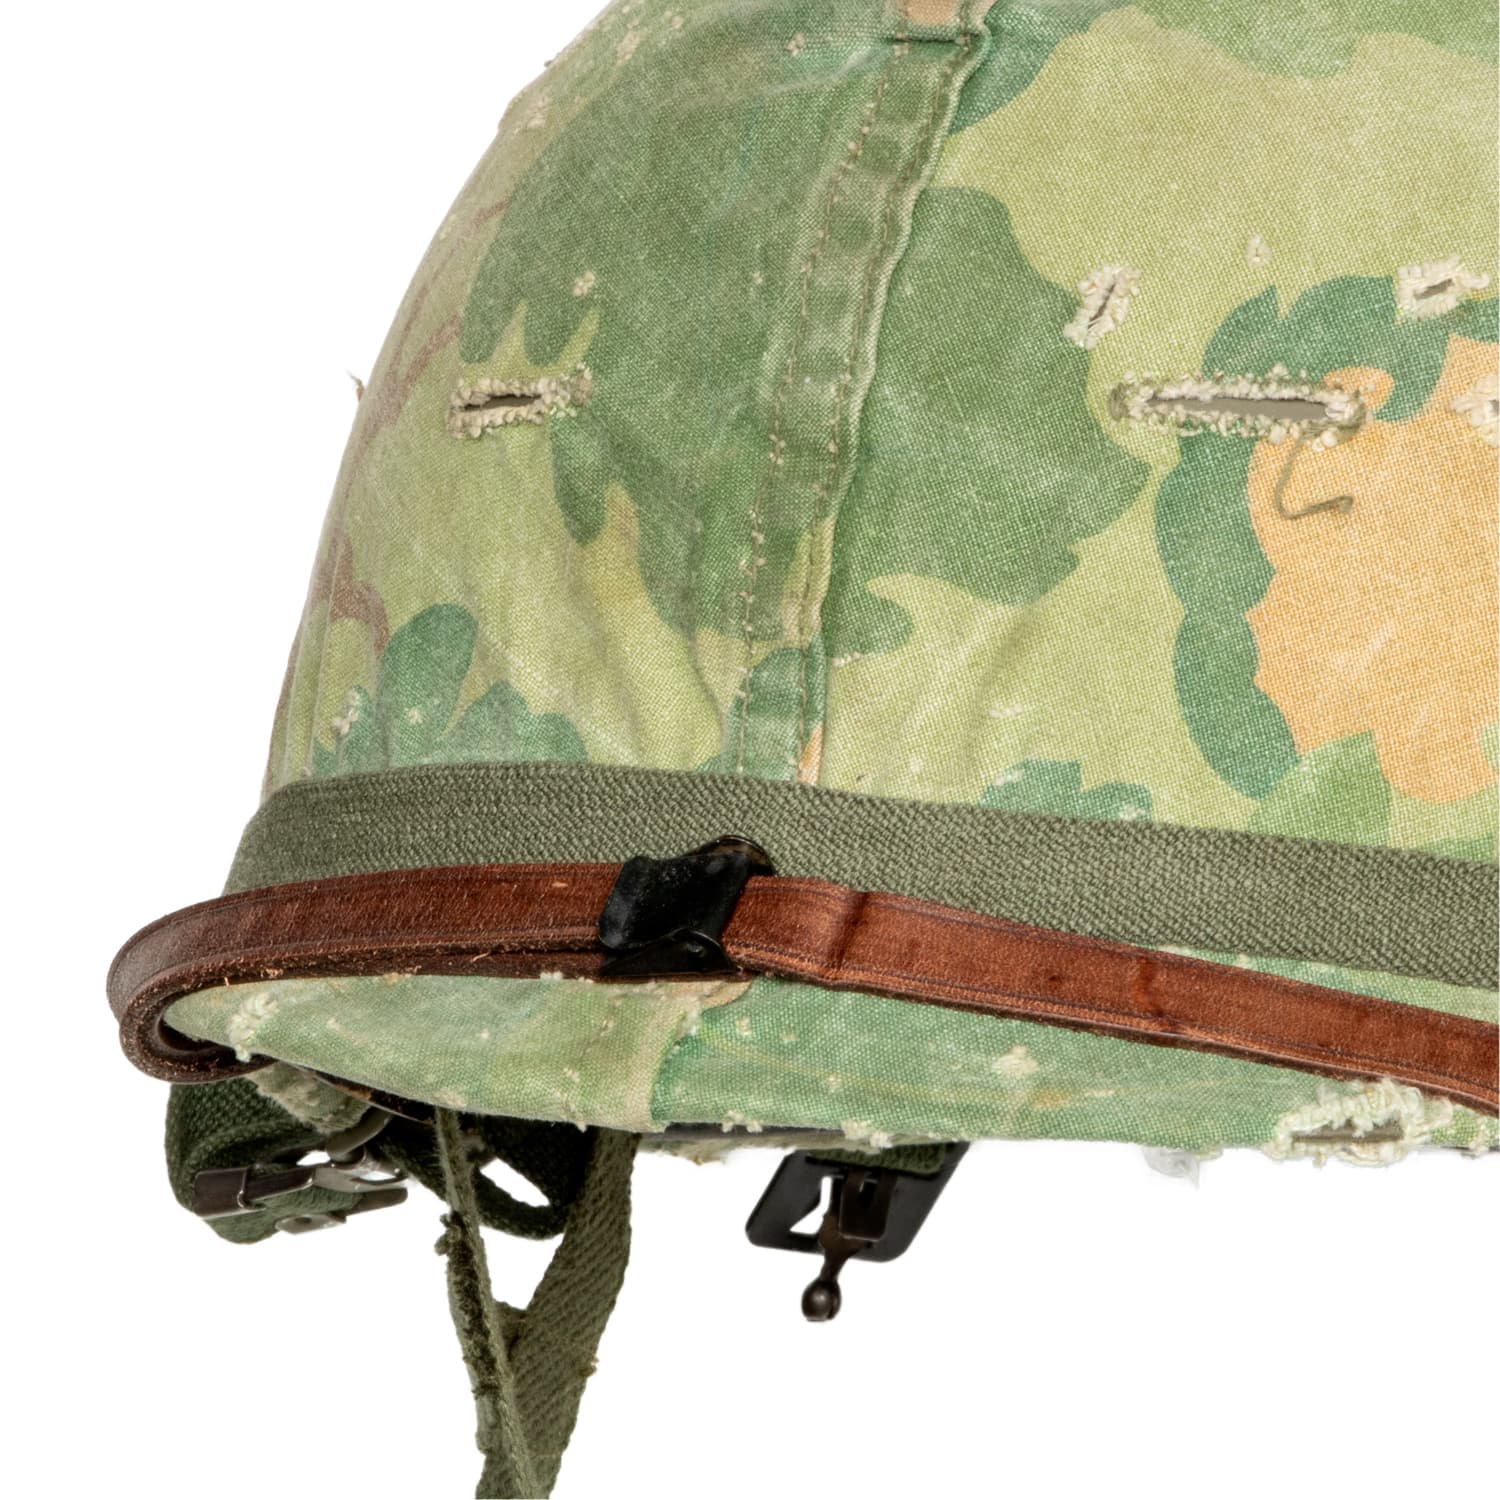 Casque Complet Vietnam Parachutiste Edition Limitée précoce vue de la jugulaire du liner